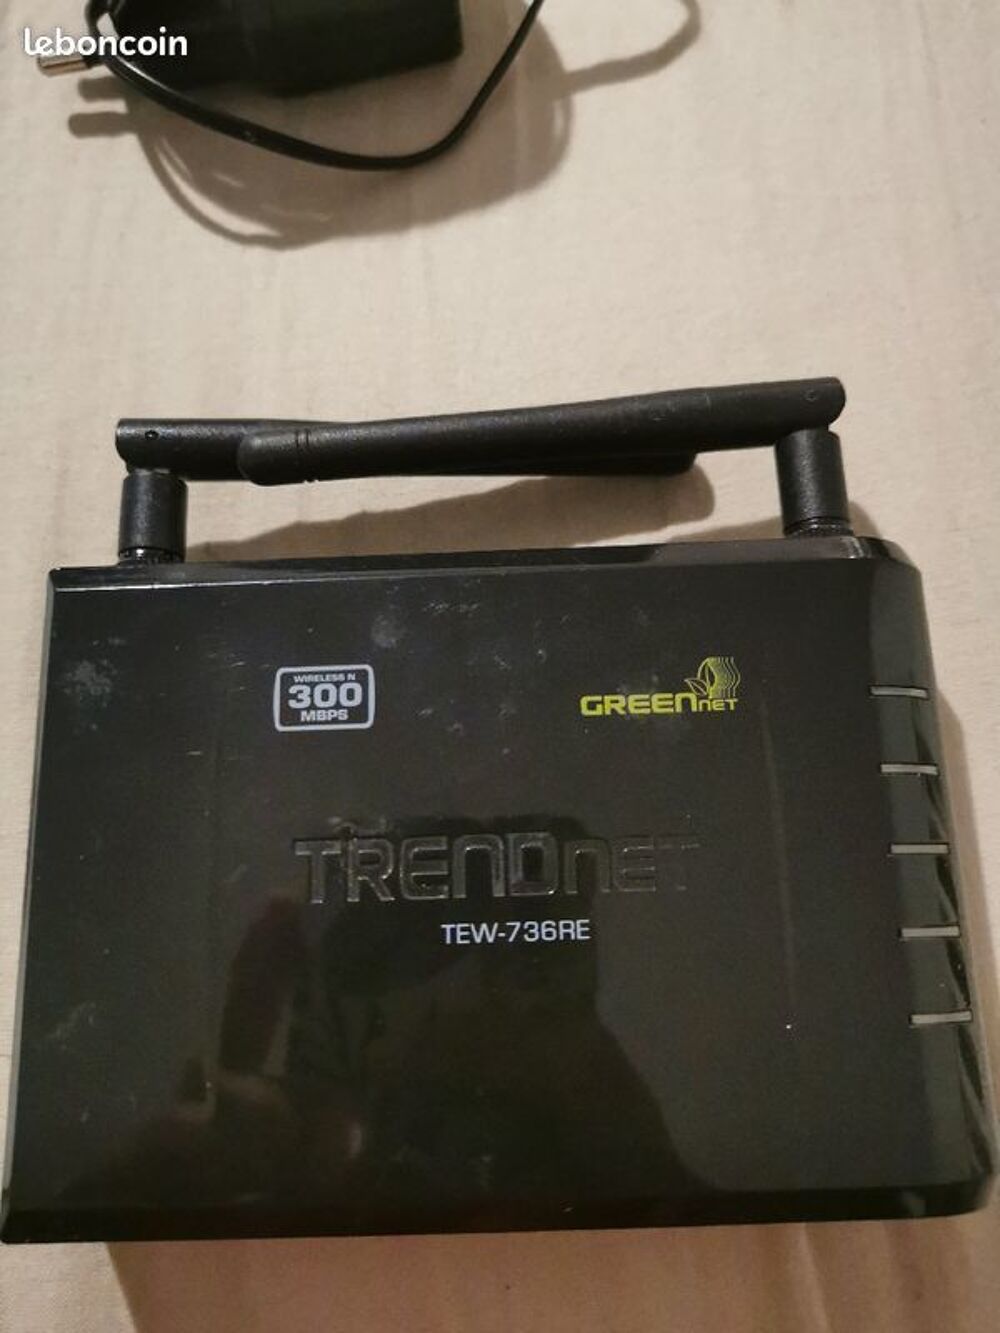 R&eacute;p&eacute;teur wifi Trendnet 300 Mbps Matriel informatique